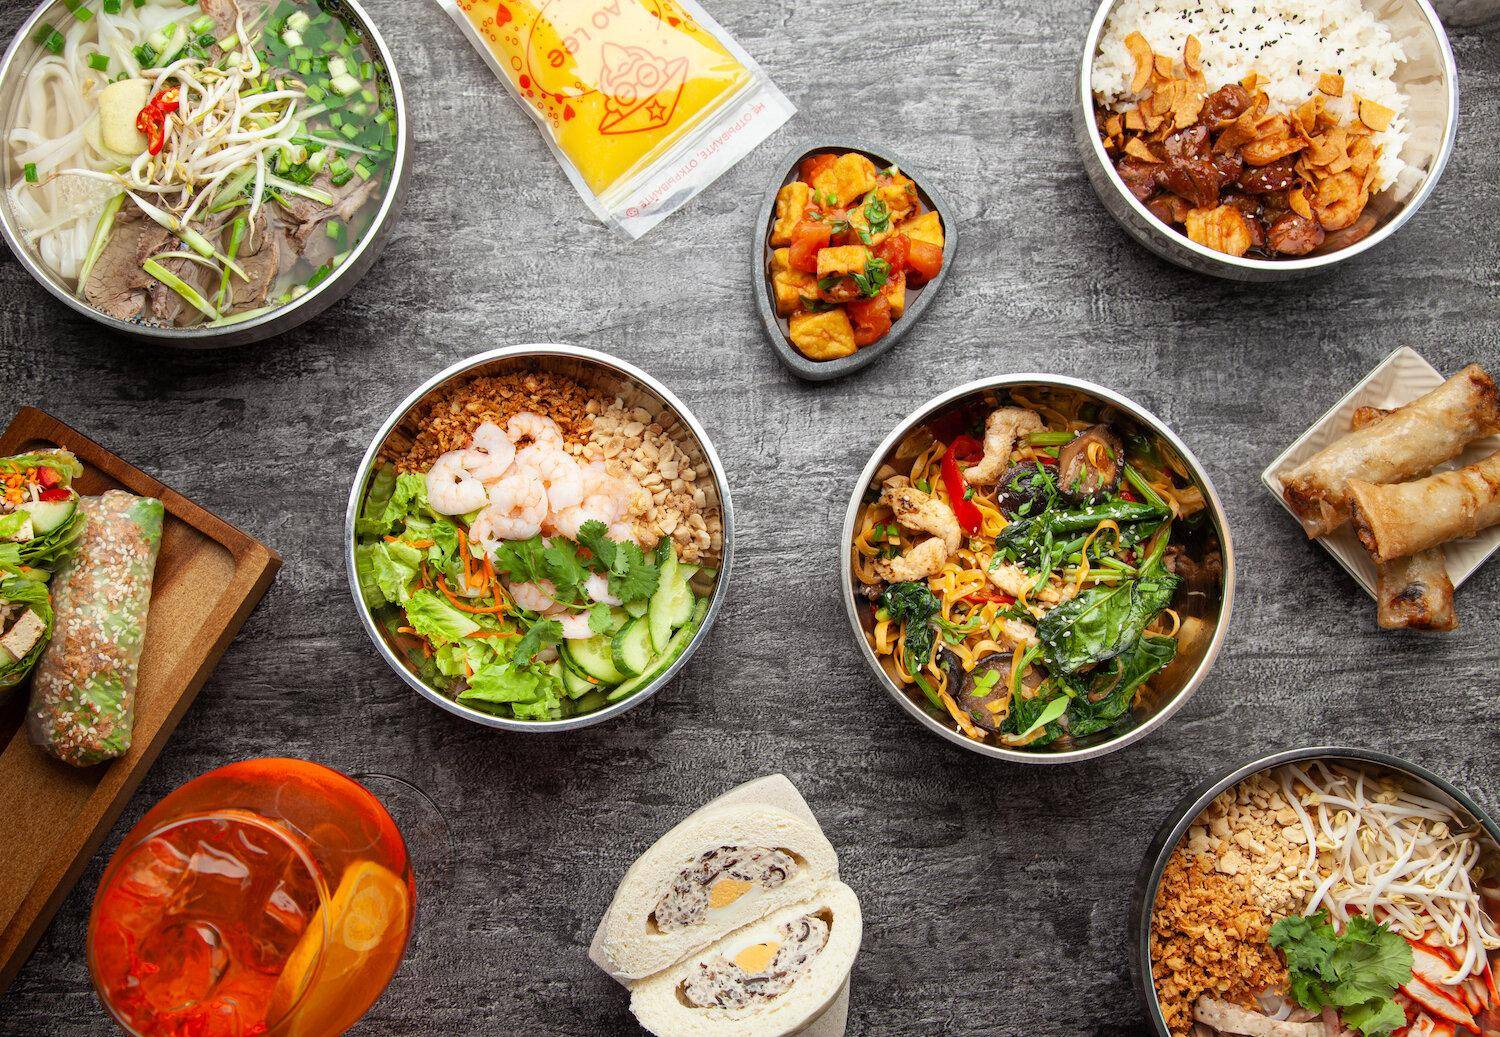 Вьетнамская кухня – наш топ-10 блюд, которые непременно нужно попробовать каждому